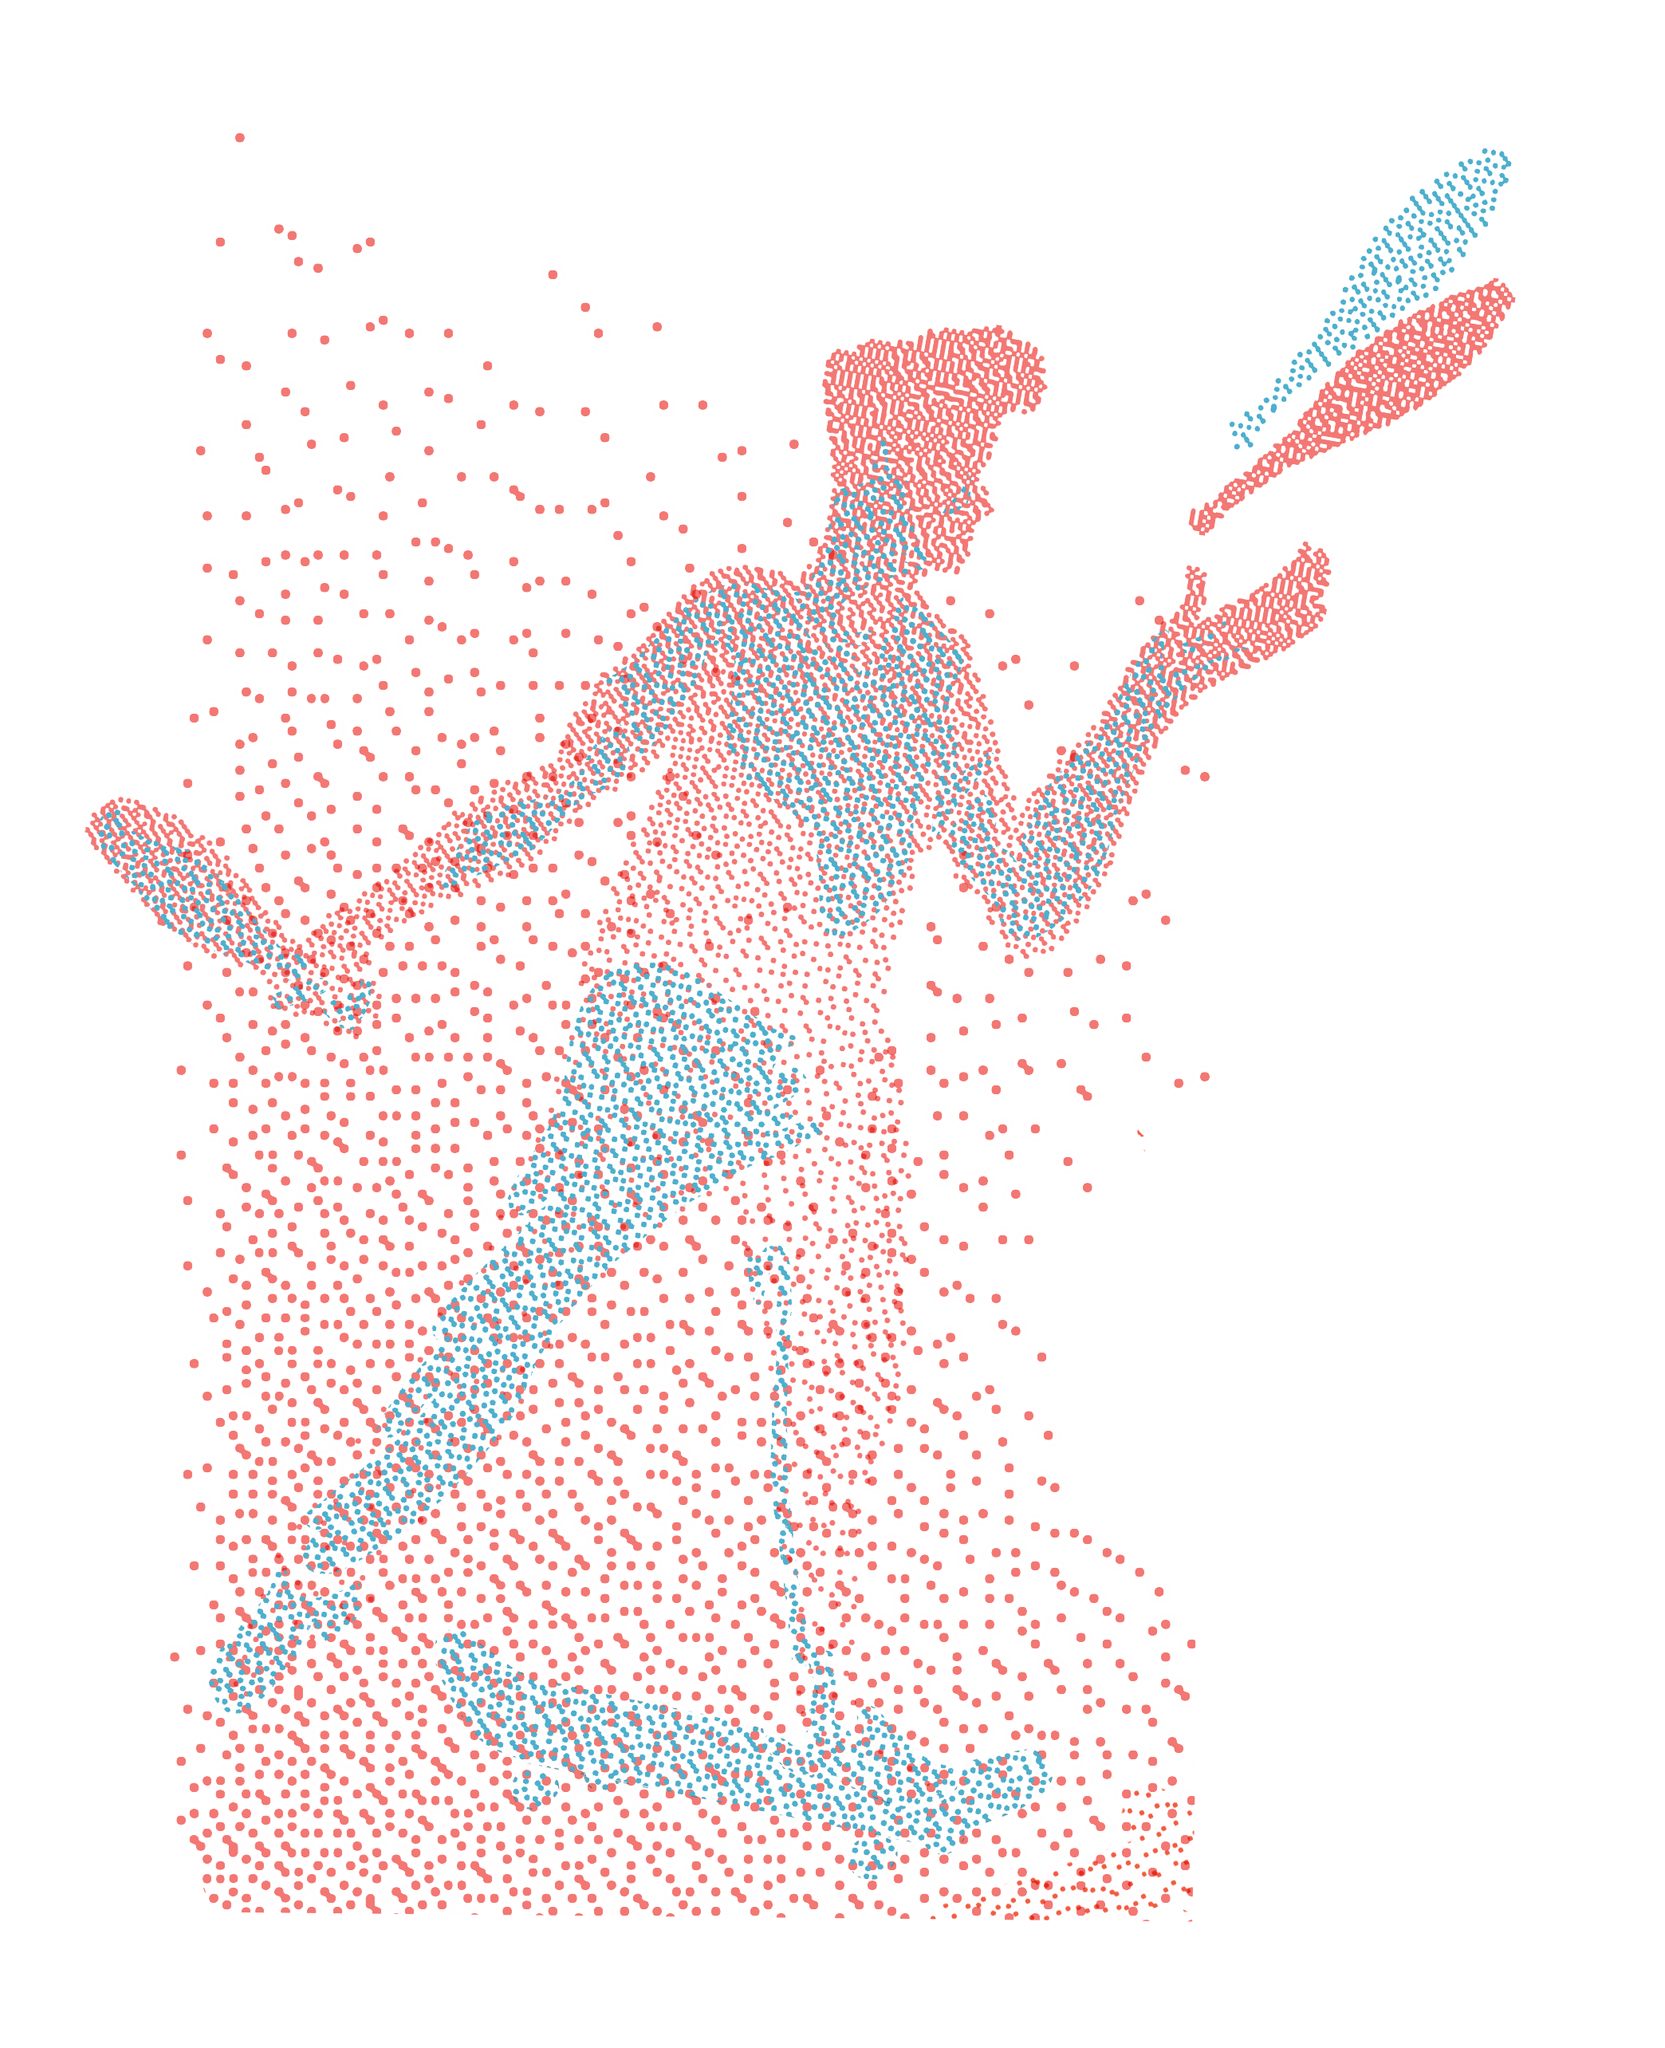 Labo - Jongle skate d'Anthony Salgueiro, illustré par Constantin Beine